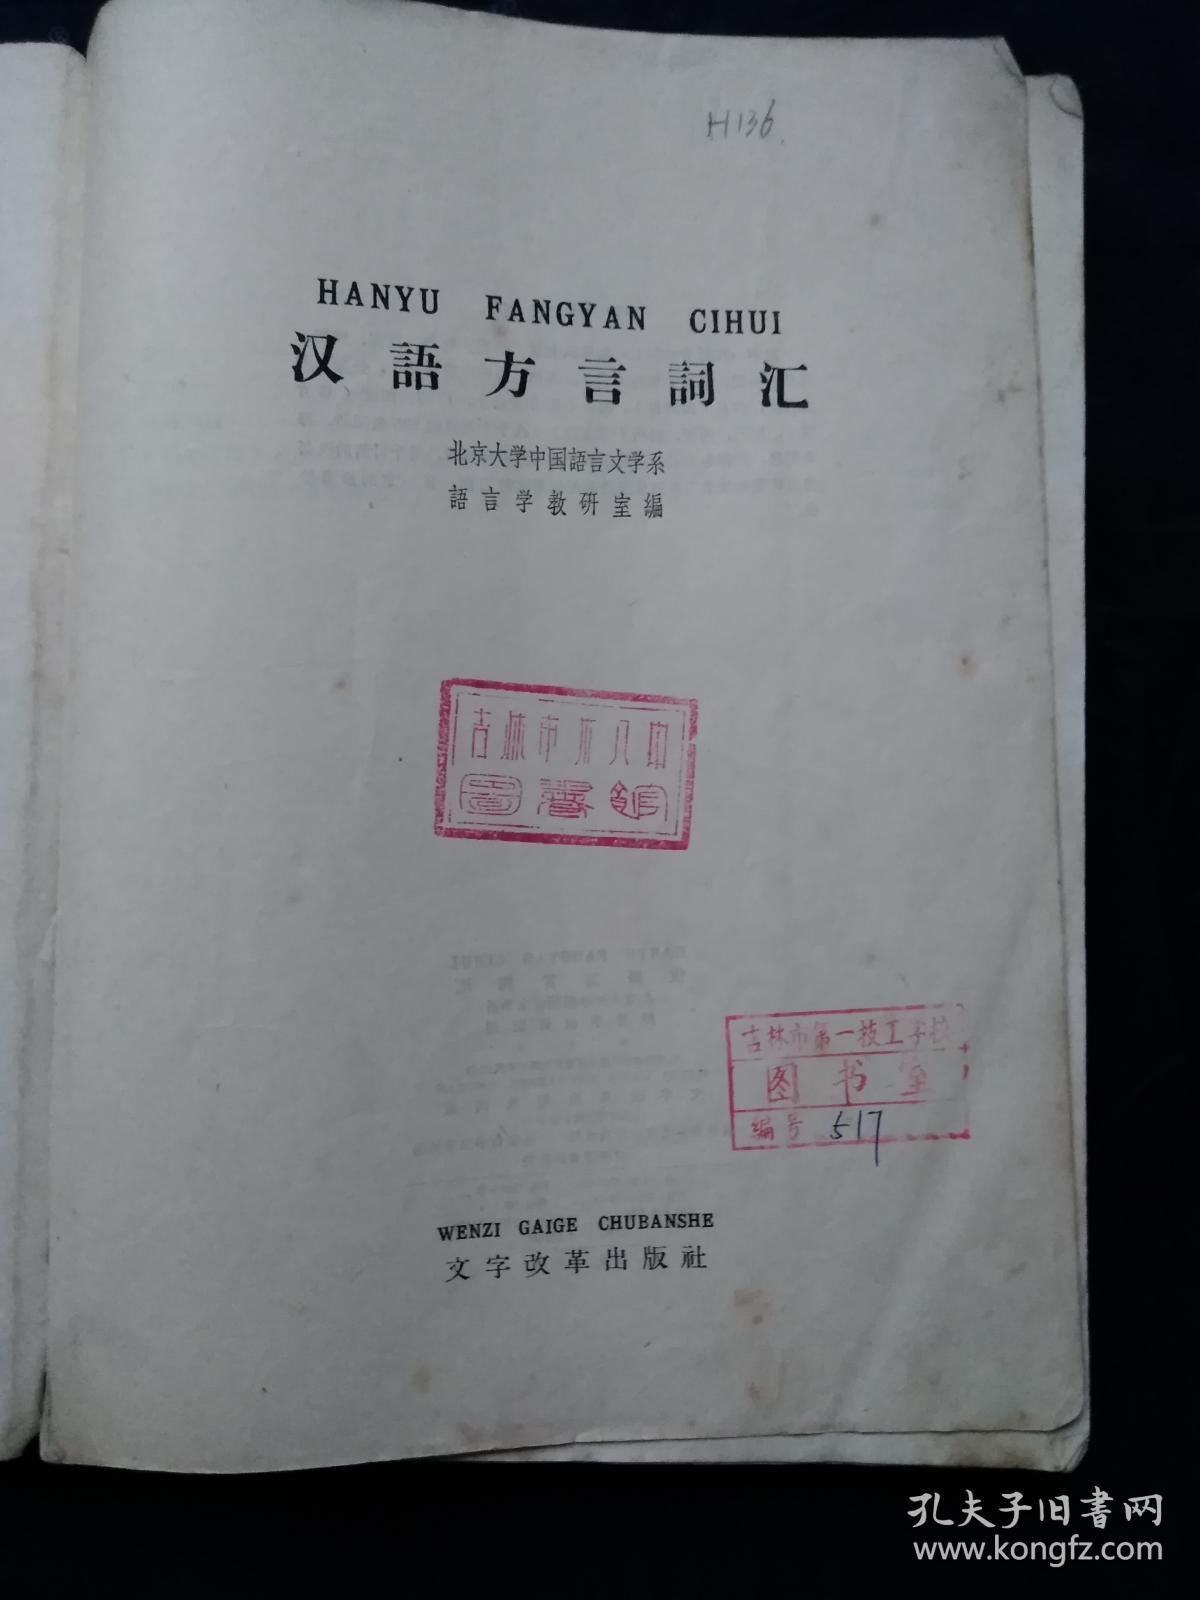 1964年1版1印馆藏书 《汉语方言词汇》北京大学中国语言文学系 语言学教研室编 文字改革出版社